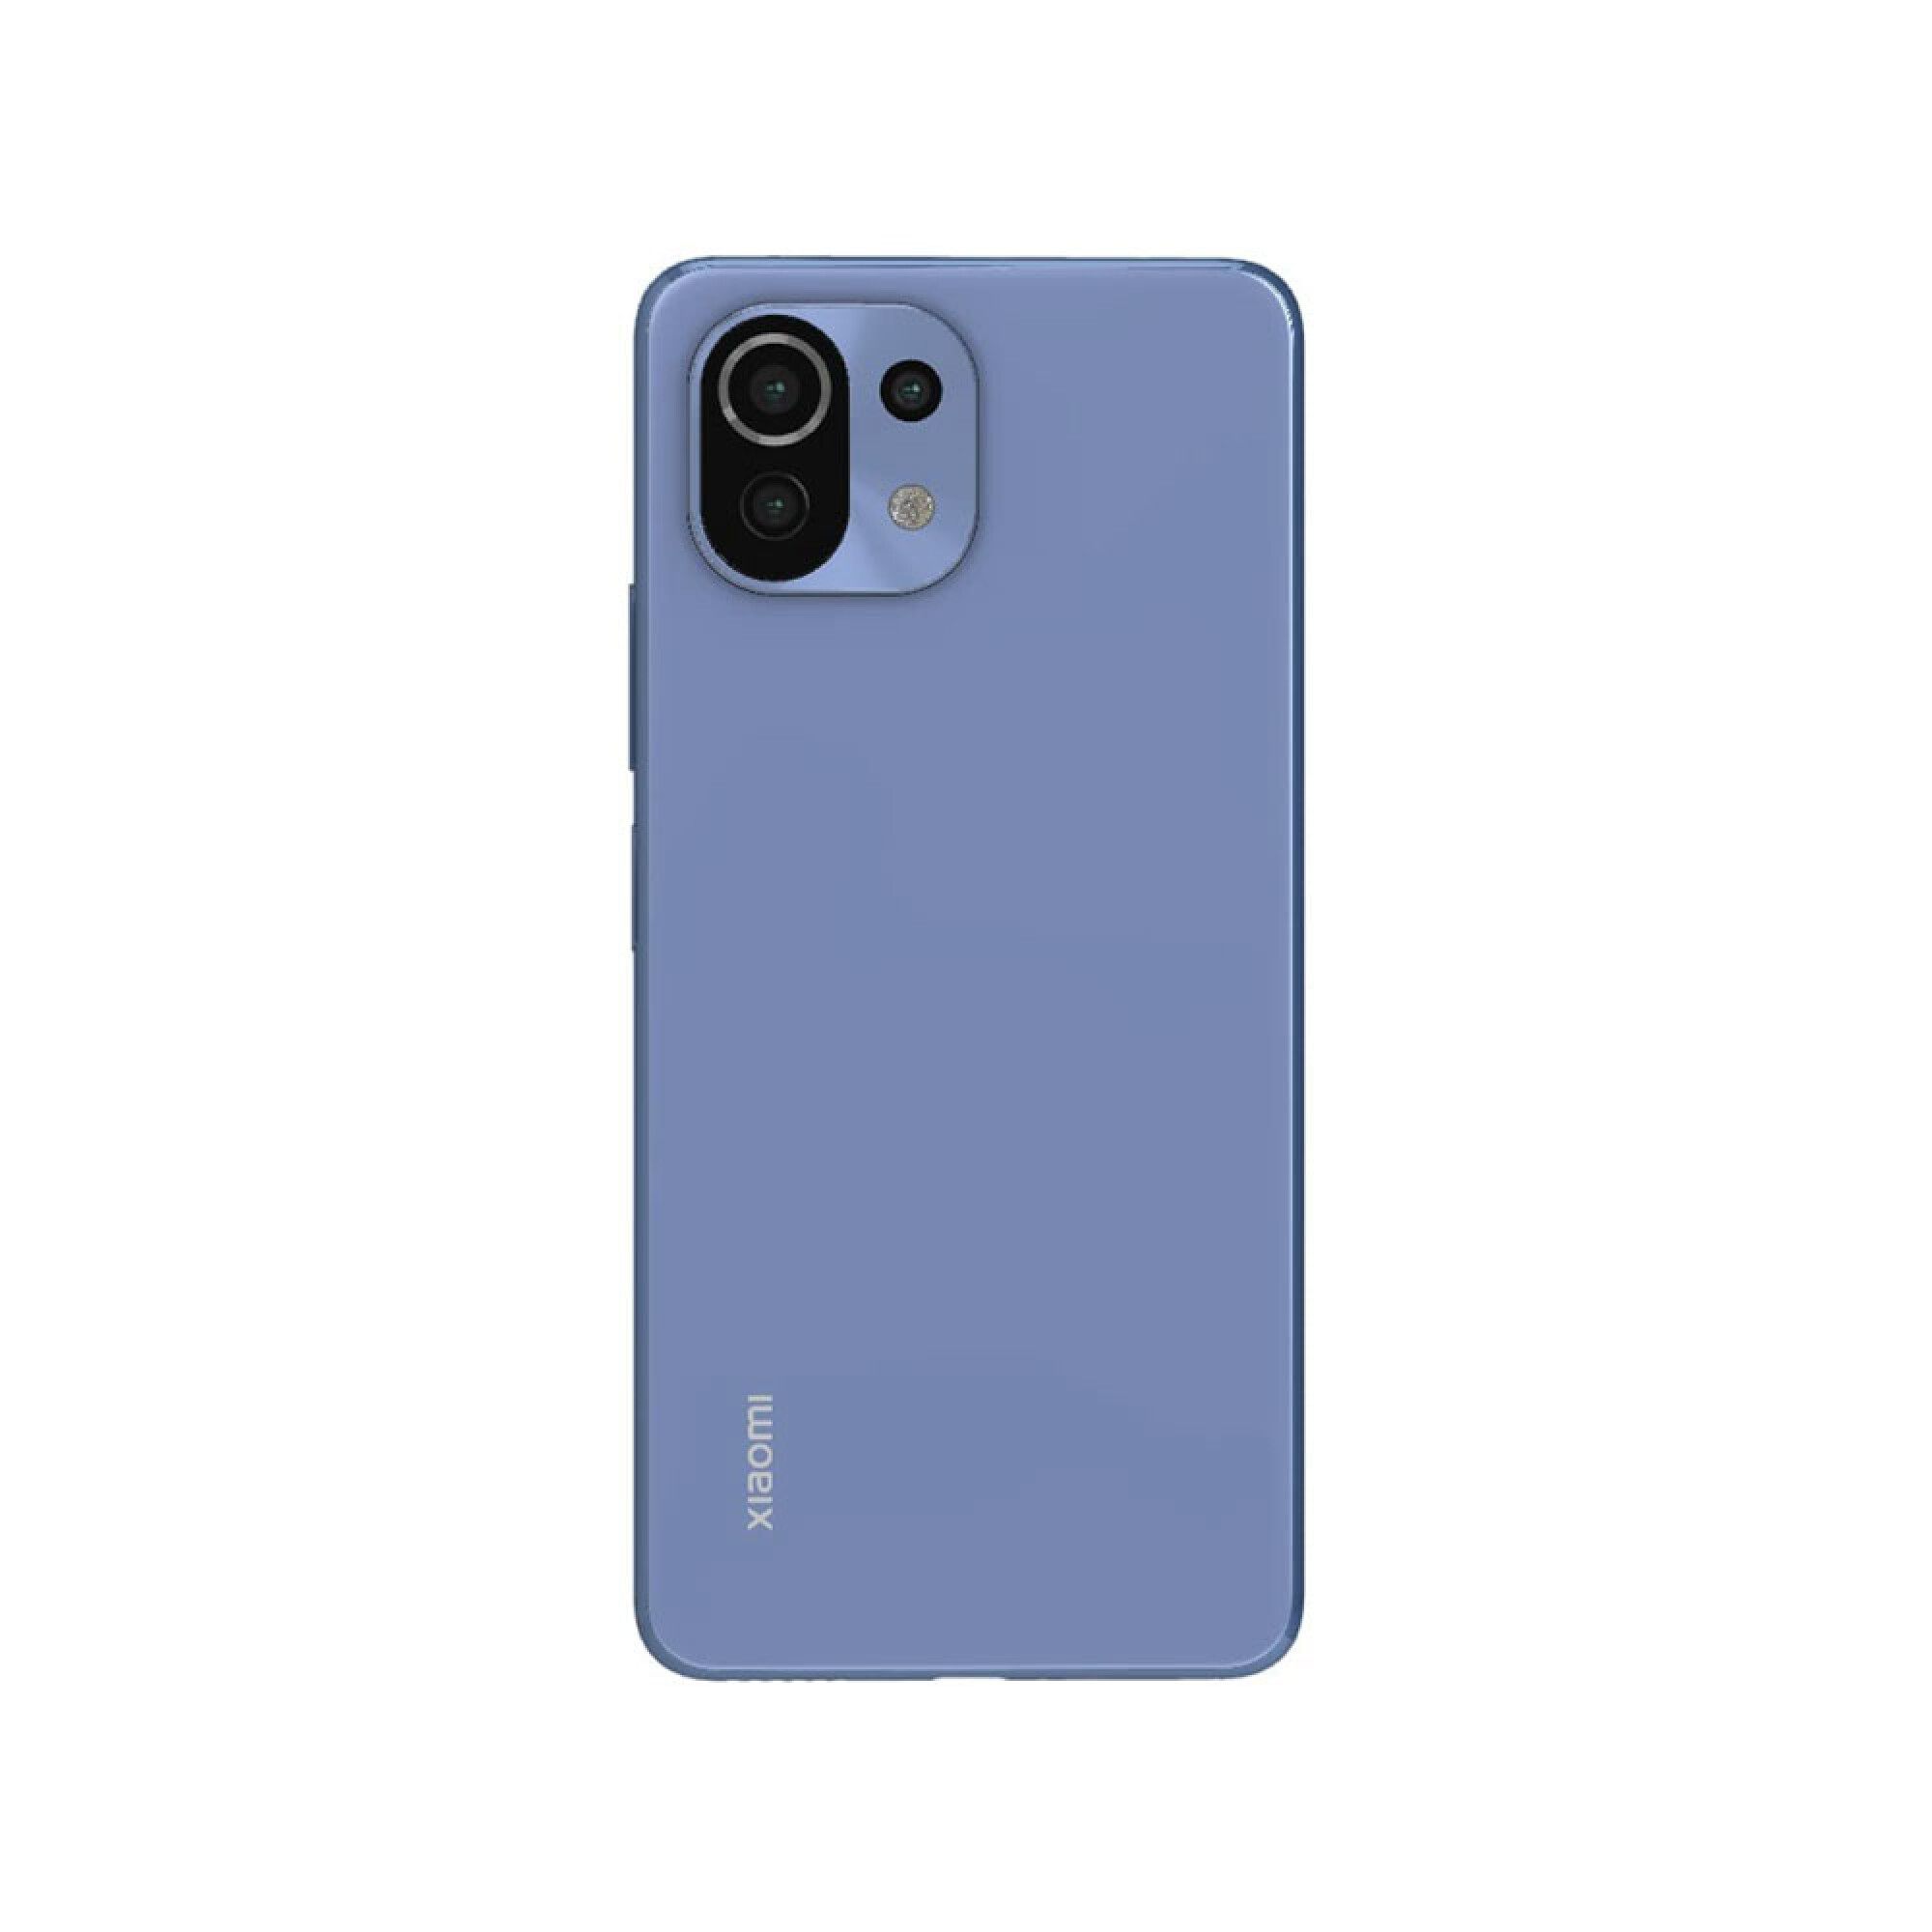 Xiaomi Mi 11 Lite 8gb 128gb - Azul